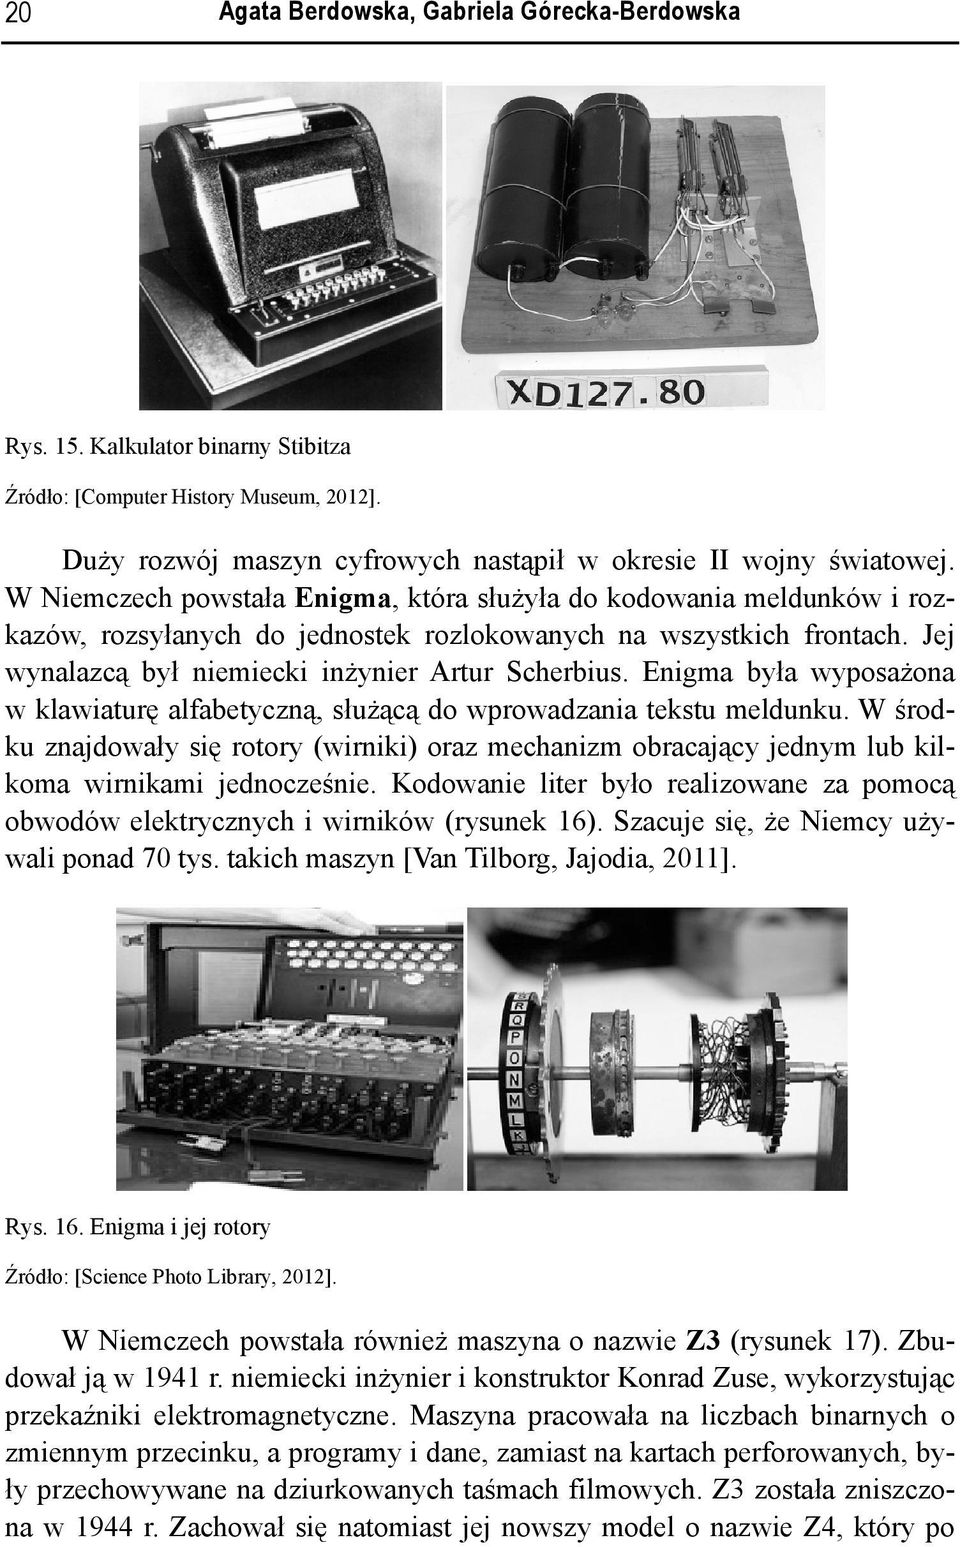 Enigma była wyposażona w klawiaturę alfabetyczną, służącą do wprowadzania tekstu meldunku. W środku znadowały się rotory (wirniki) oraz mechanizm obracaący ednym lub kilkoma wirnikami ednocześnie.